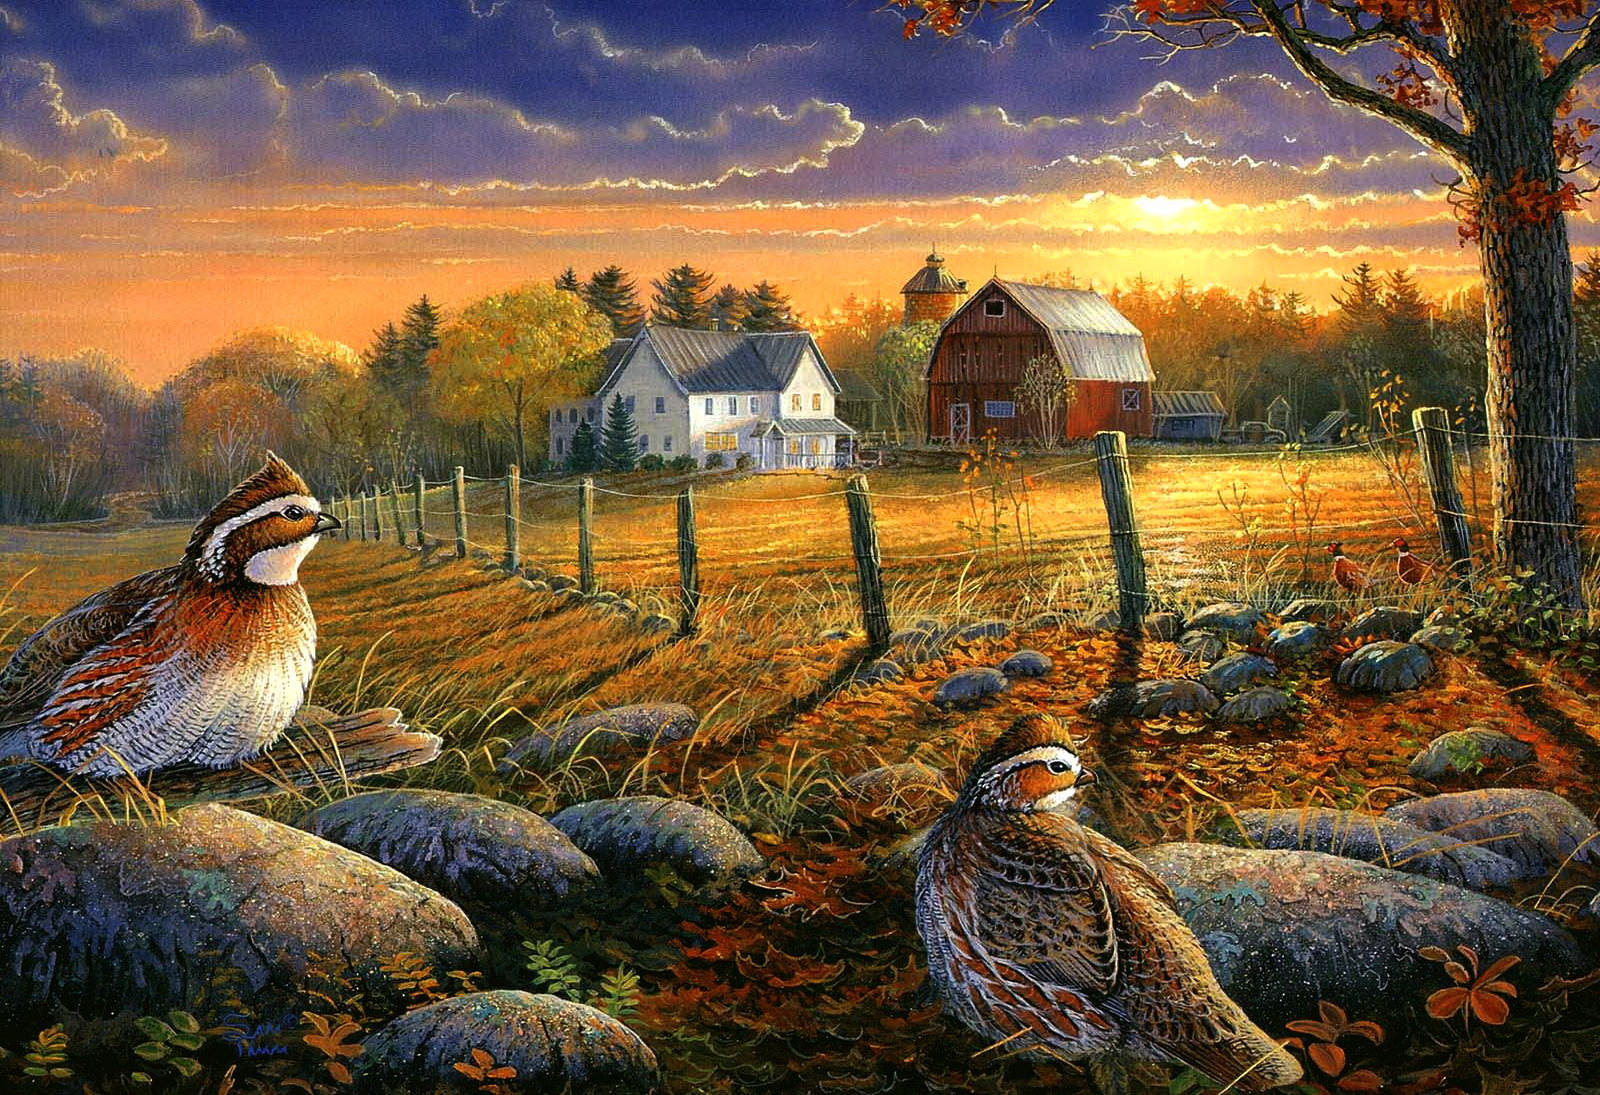 Entspannenund Verbinden Sie Sich Mit Der Natur - Genießen Sie Den Glanz Des Herbstes Auf Einem Bauernhof. Wallpaper